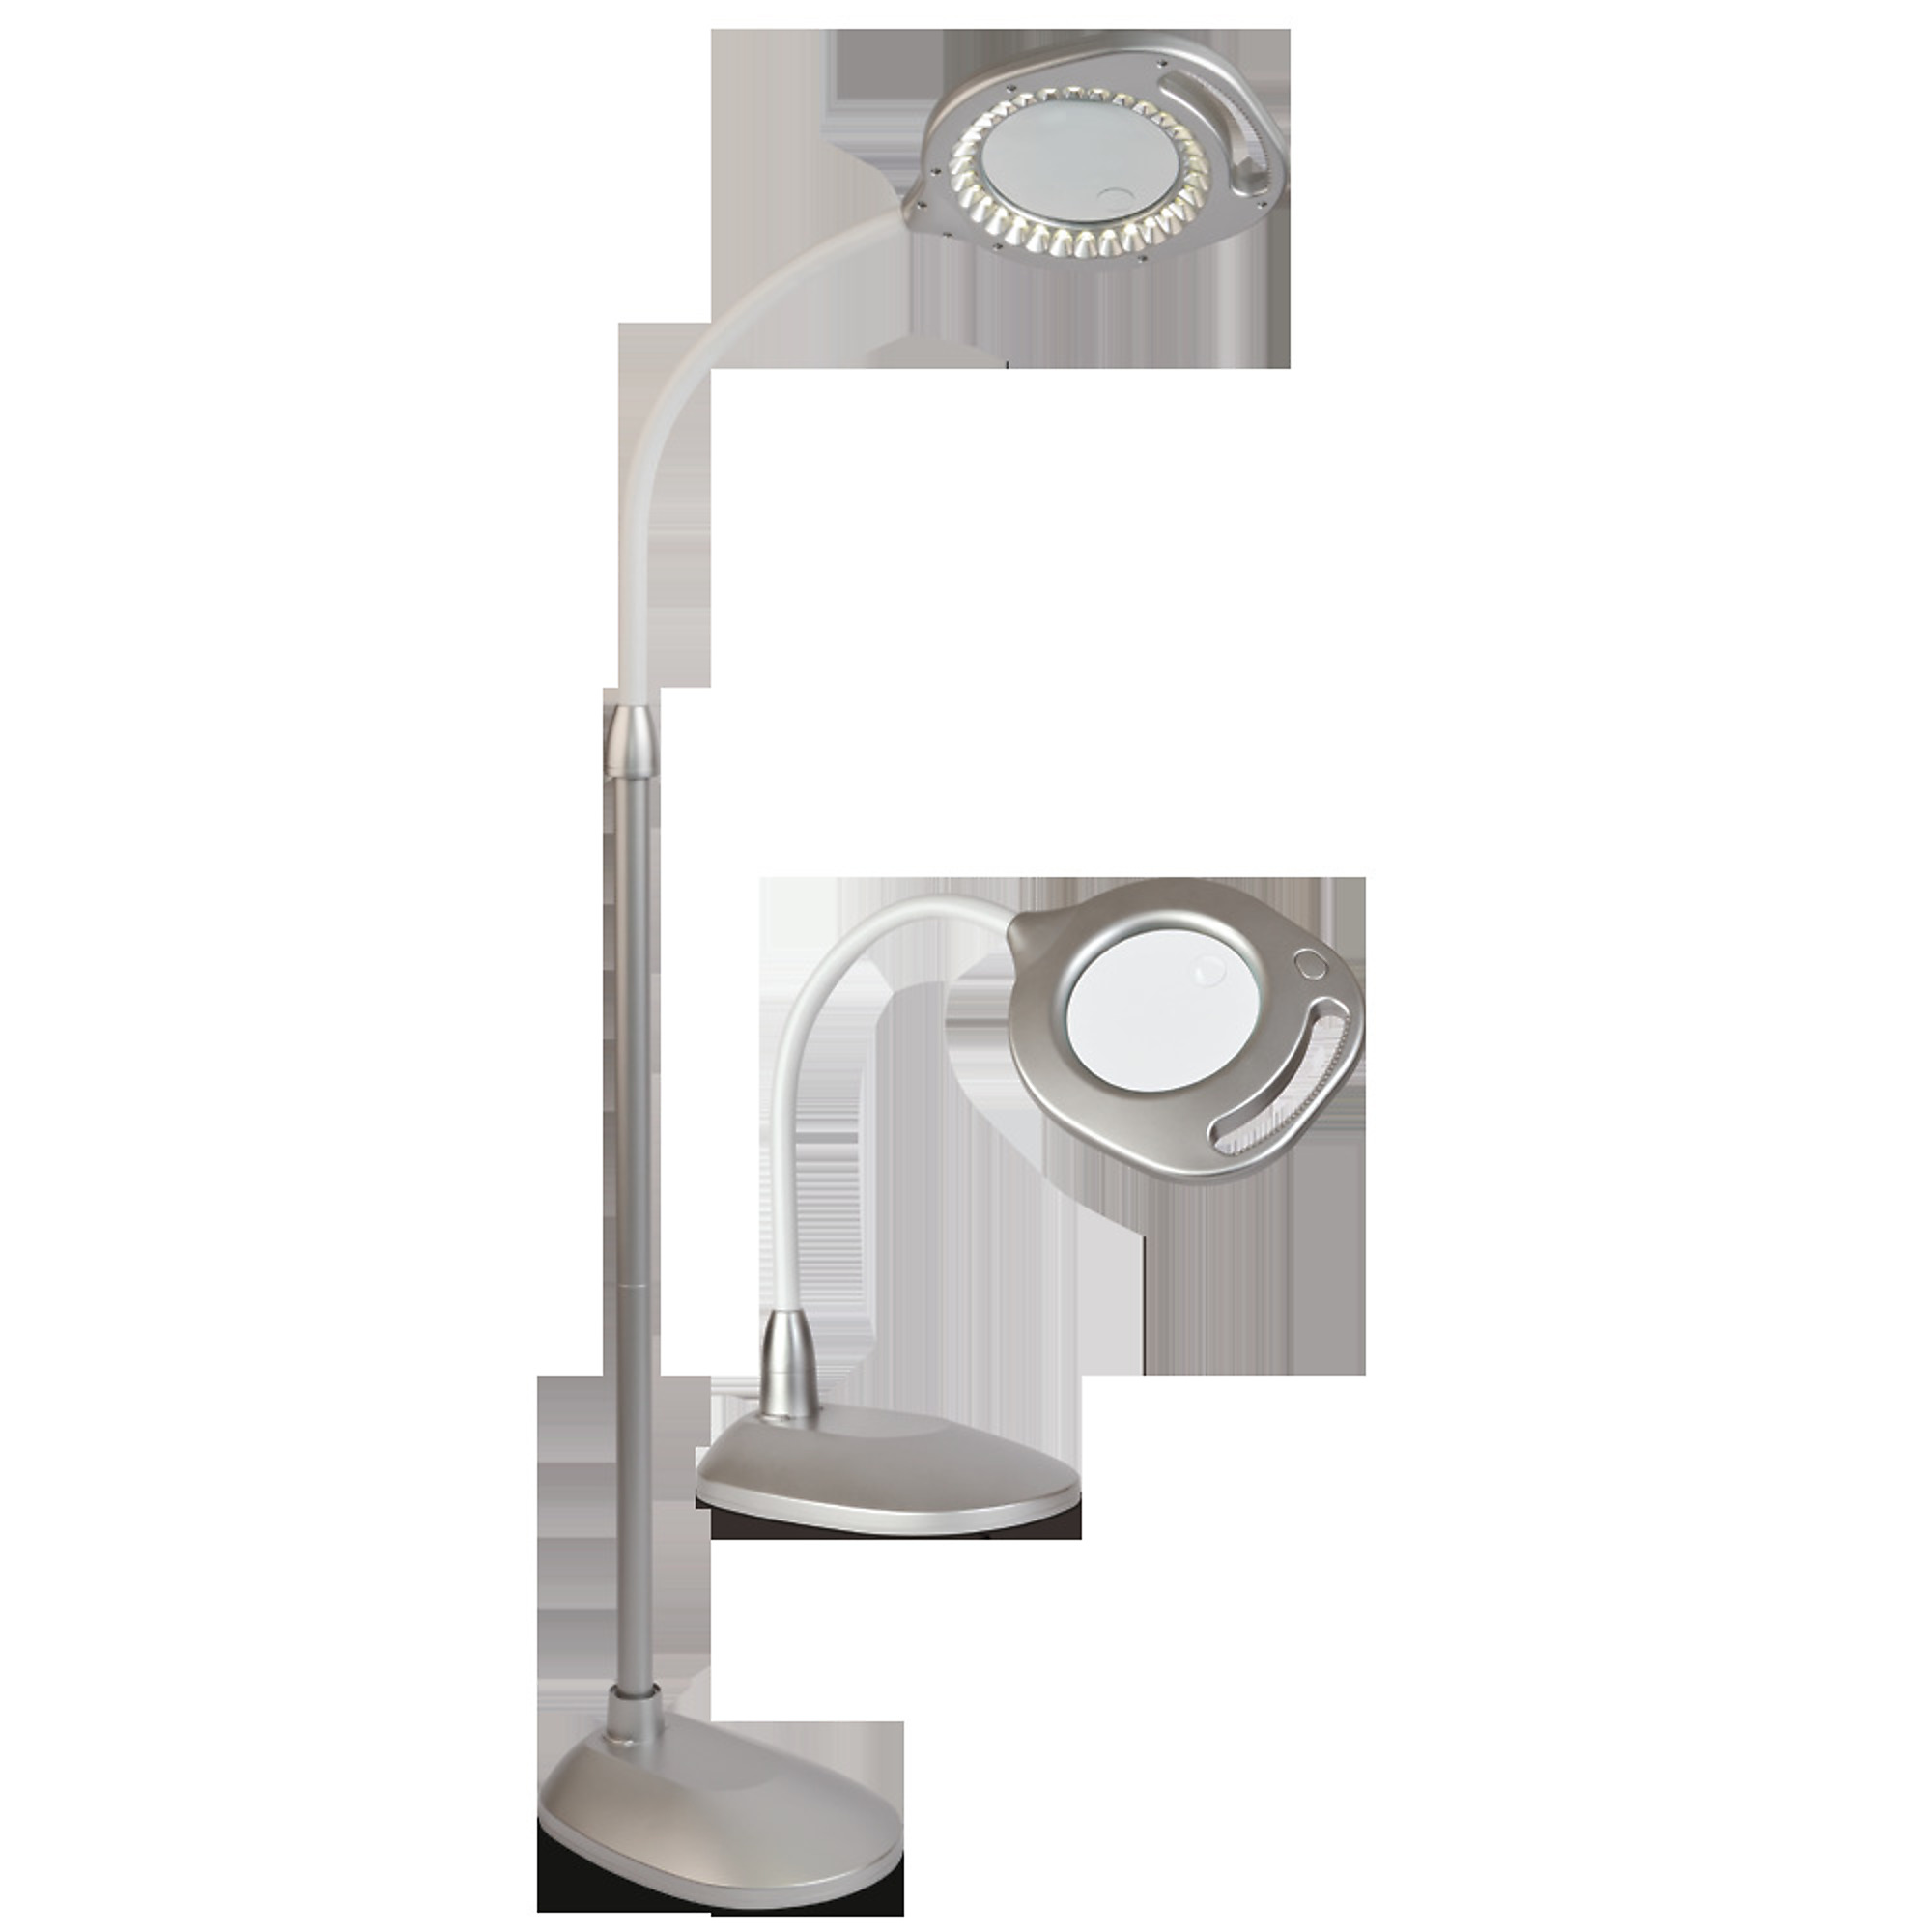 OttLite LED Magnifier Floor & Table Light